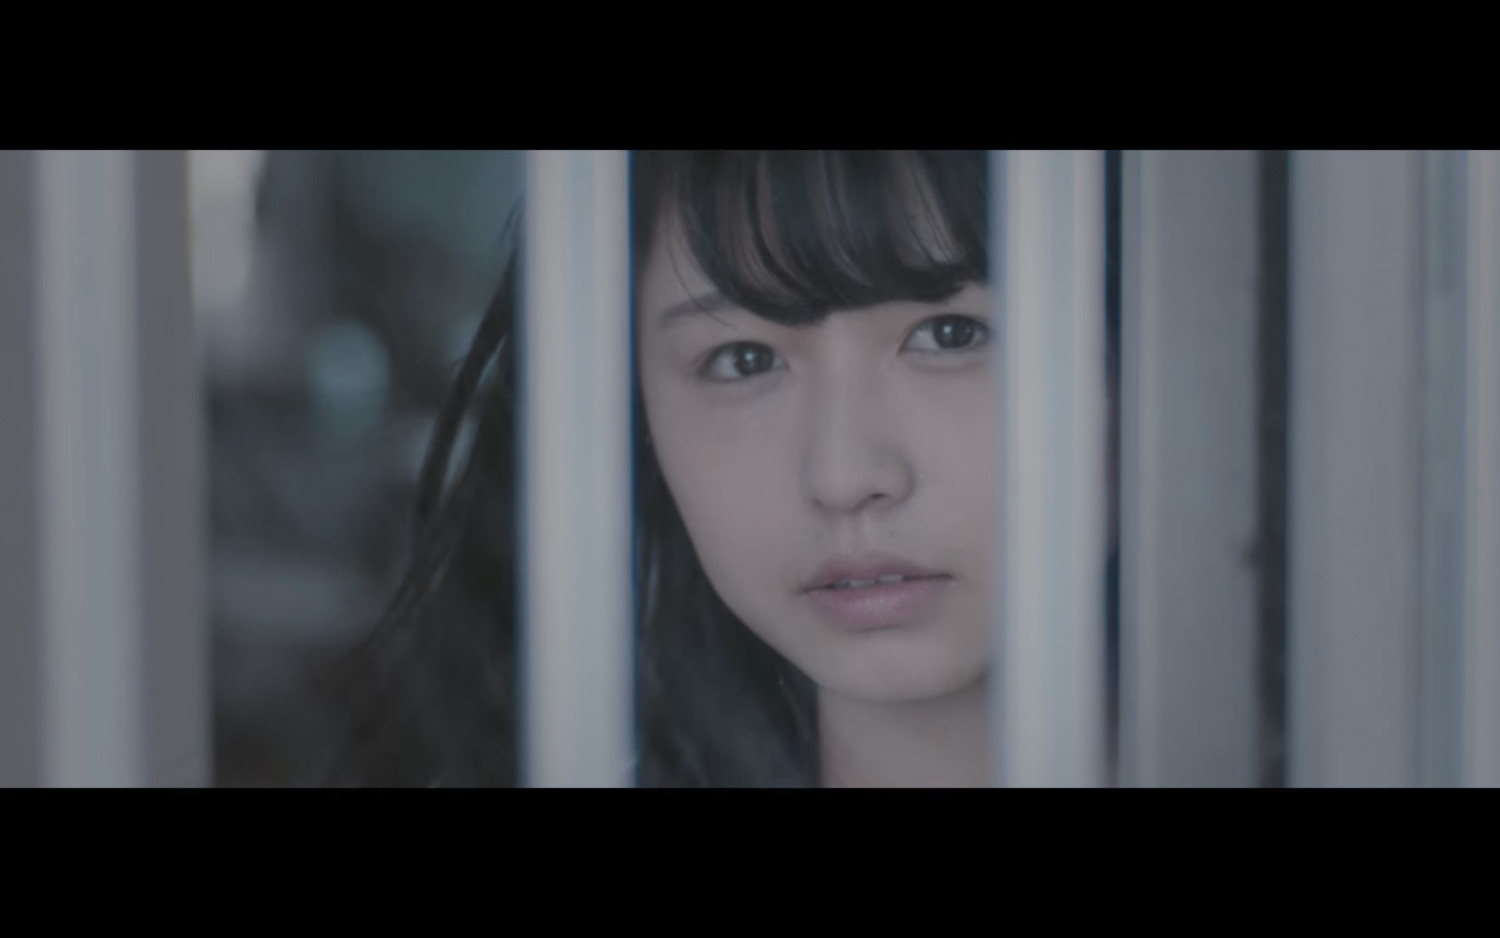 Witness the Strange Behavior of Keyakizaka46 through the new MV for “Eccentric”!